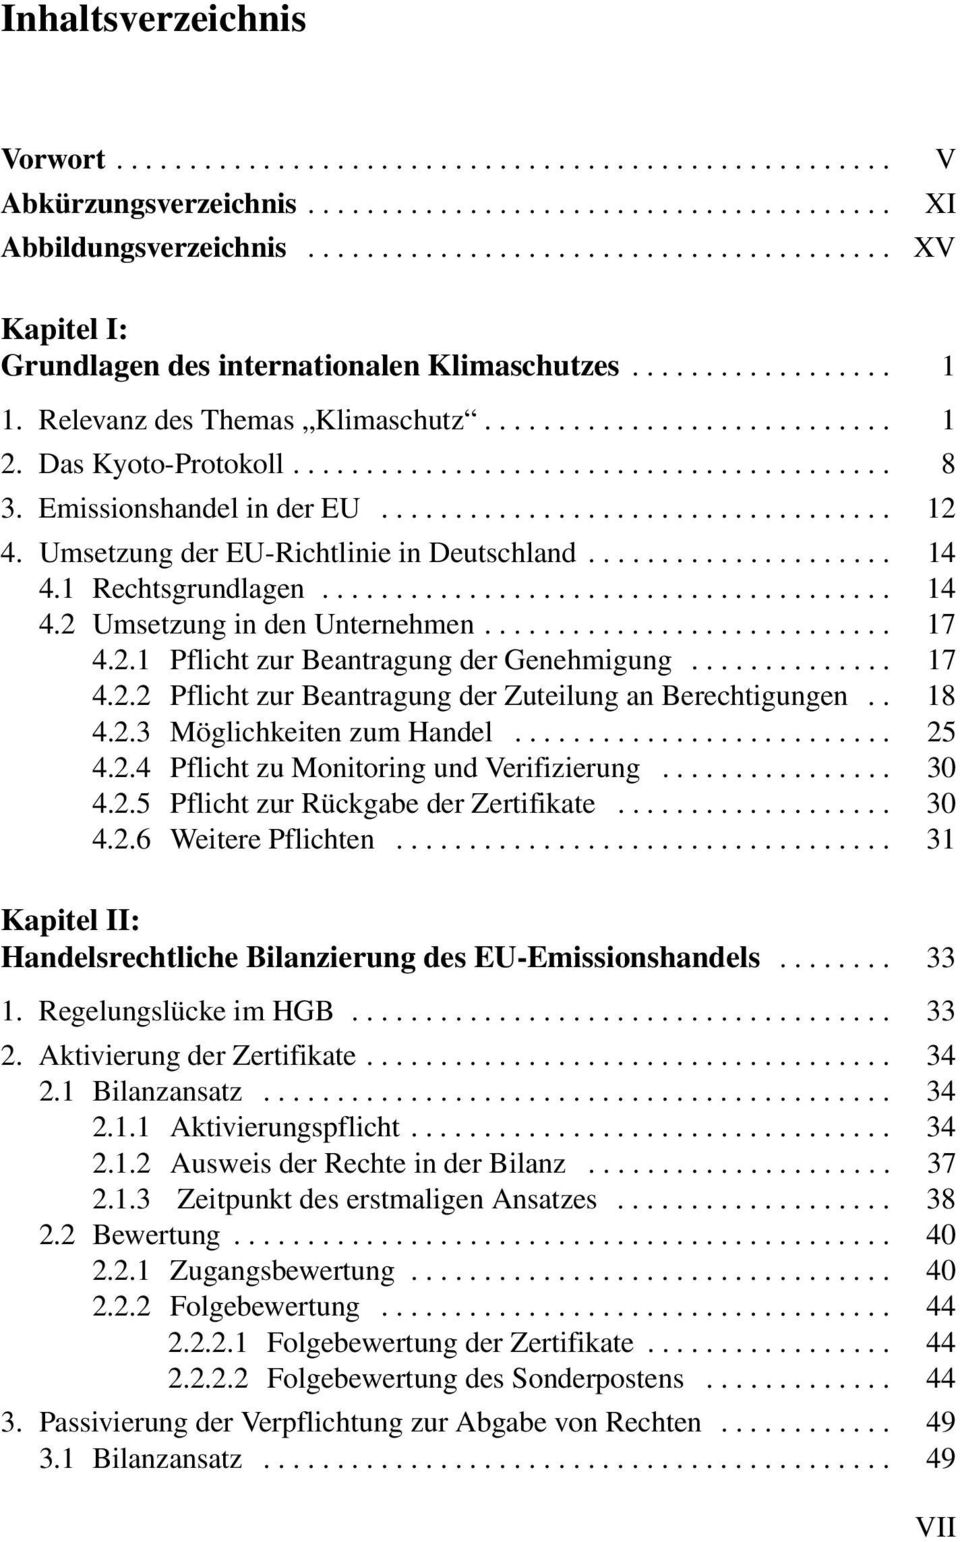 Das Kyoto-Protokoll......................................... 8 3. Emissionshandel in der EU................................... 12 4. Umsetzung der EU-Richtlinie in Deutschland..................... 14 4.